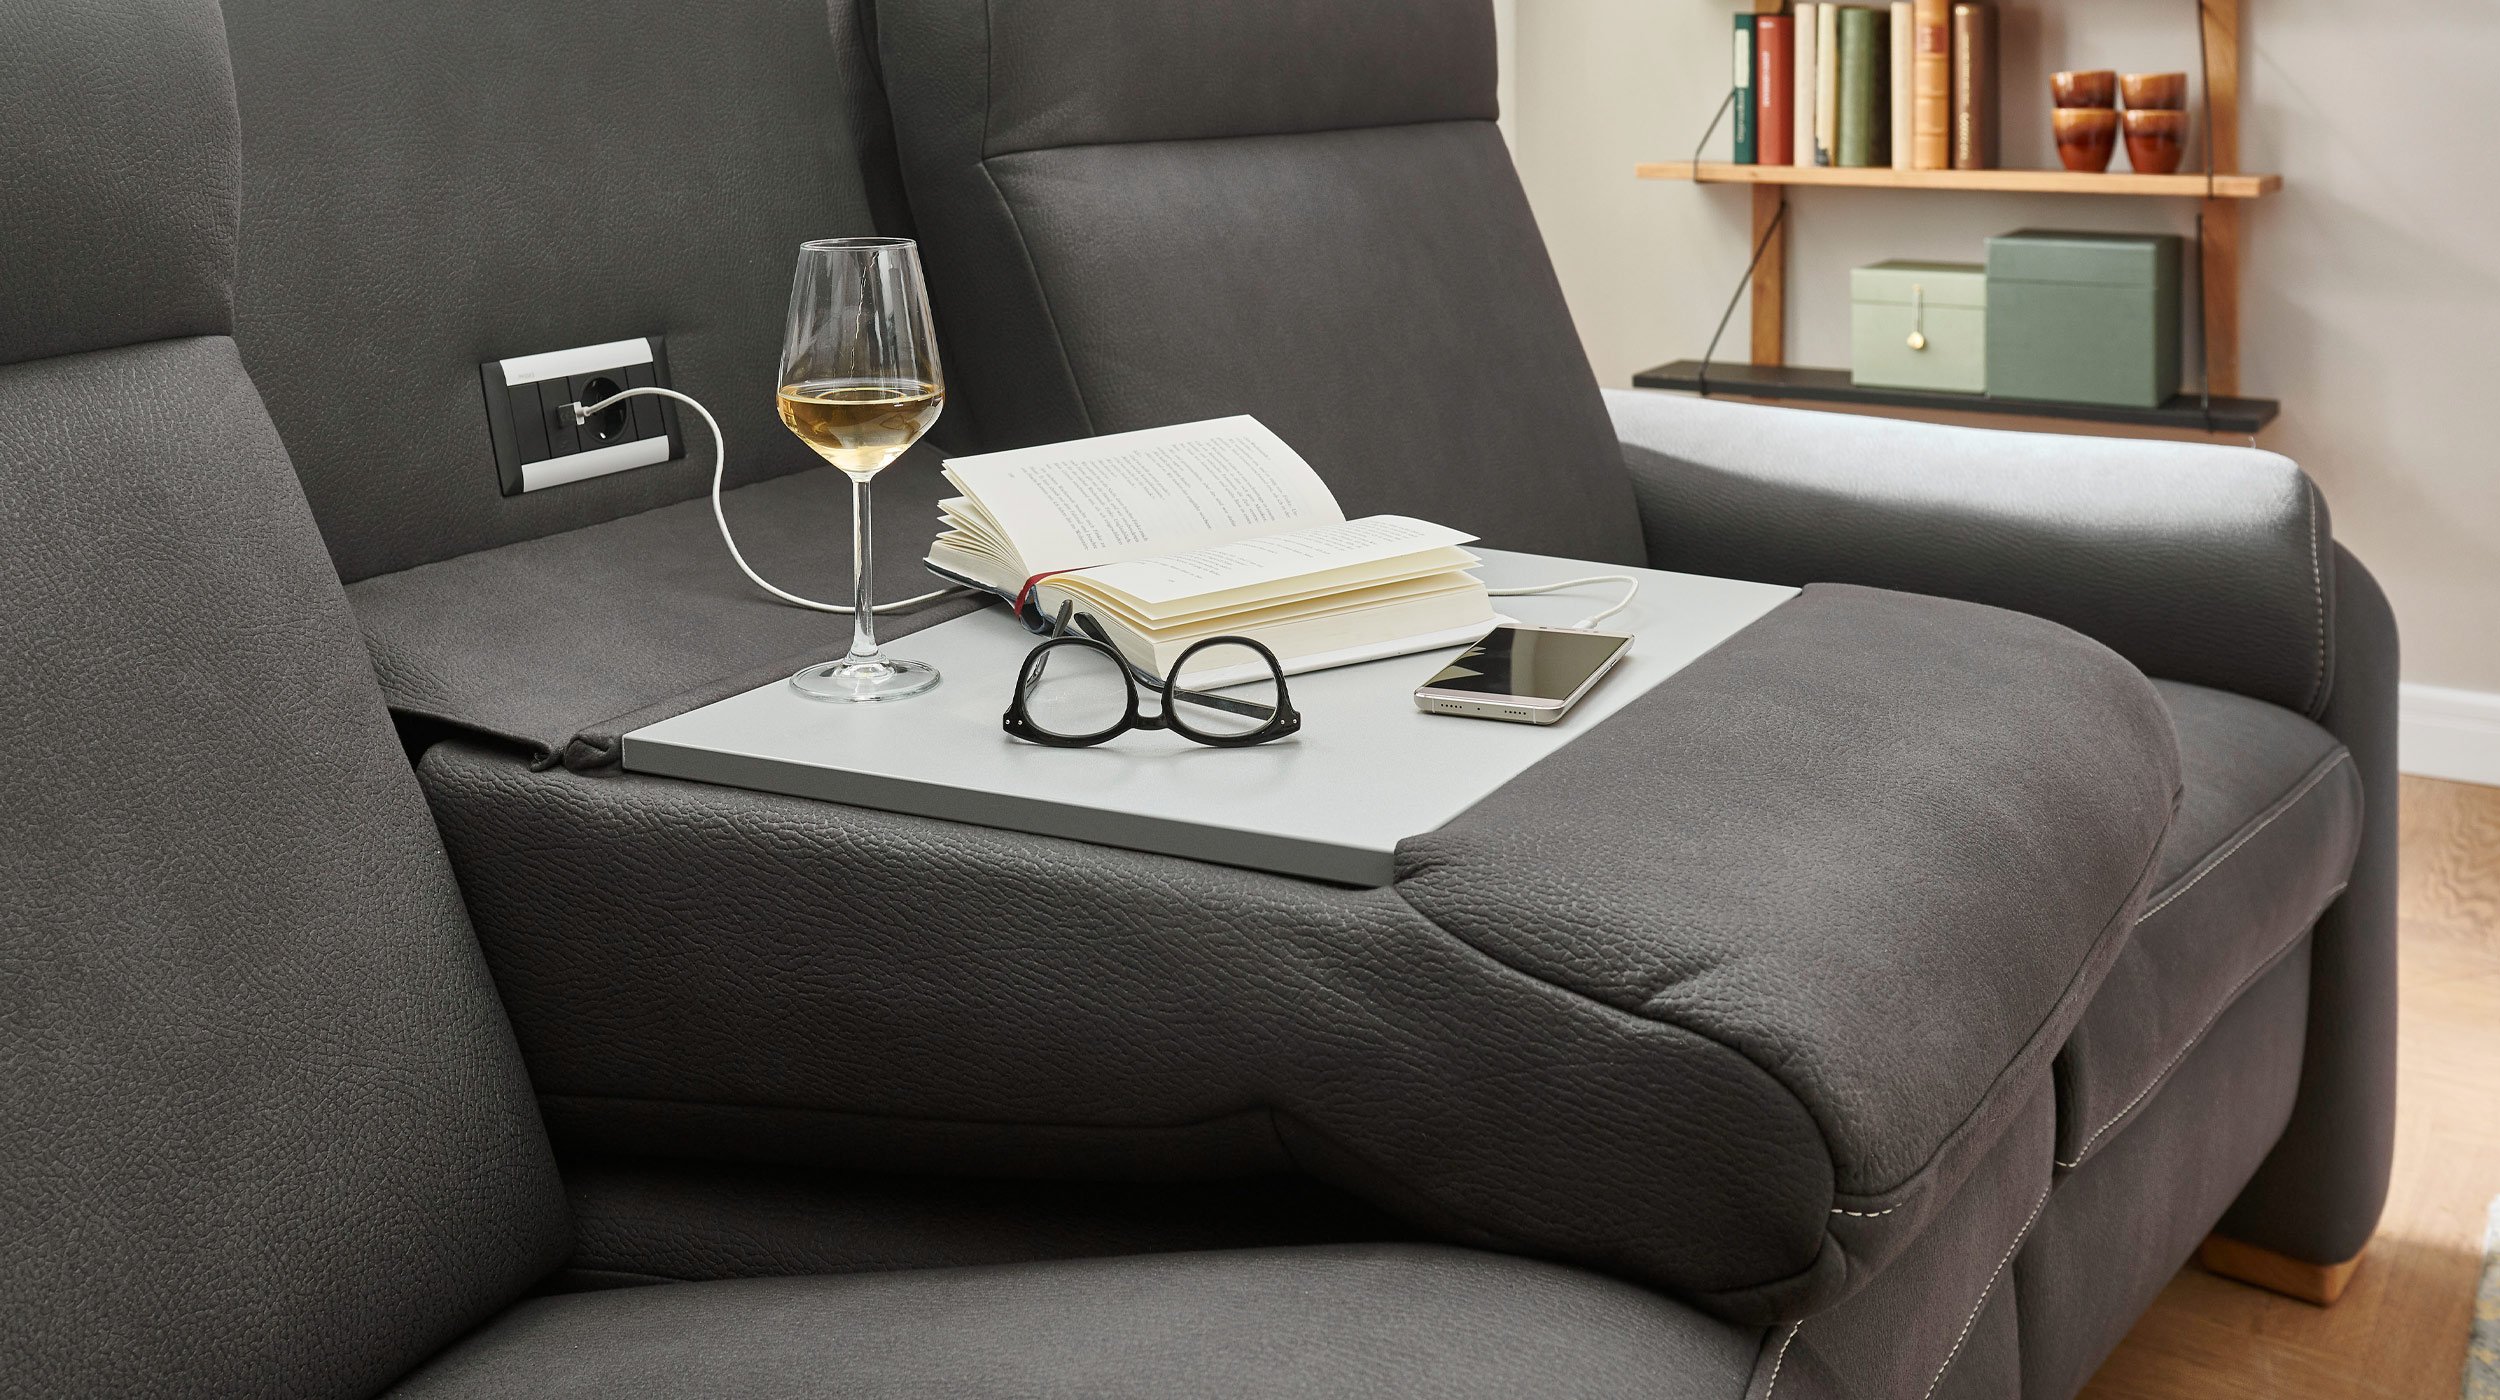 Couchliebe® Einzelsofa 3-Sitzer planbar - anthrazit - Premium Version - PENELOPE